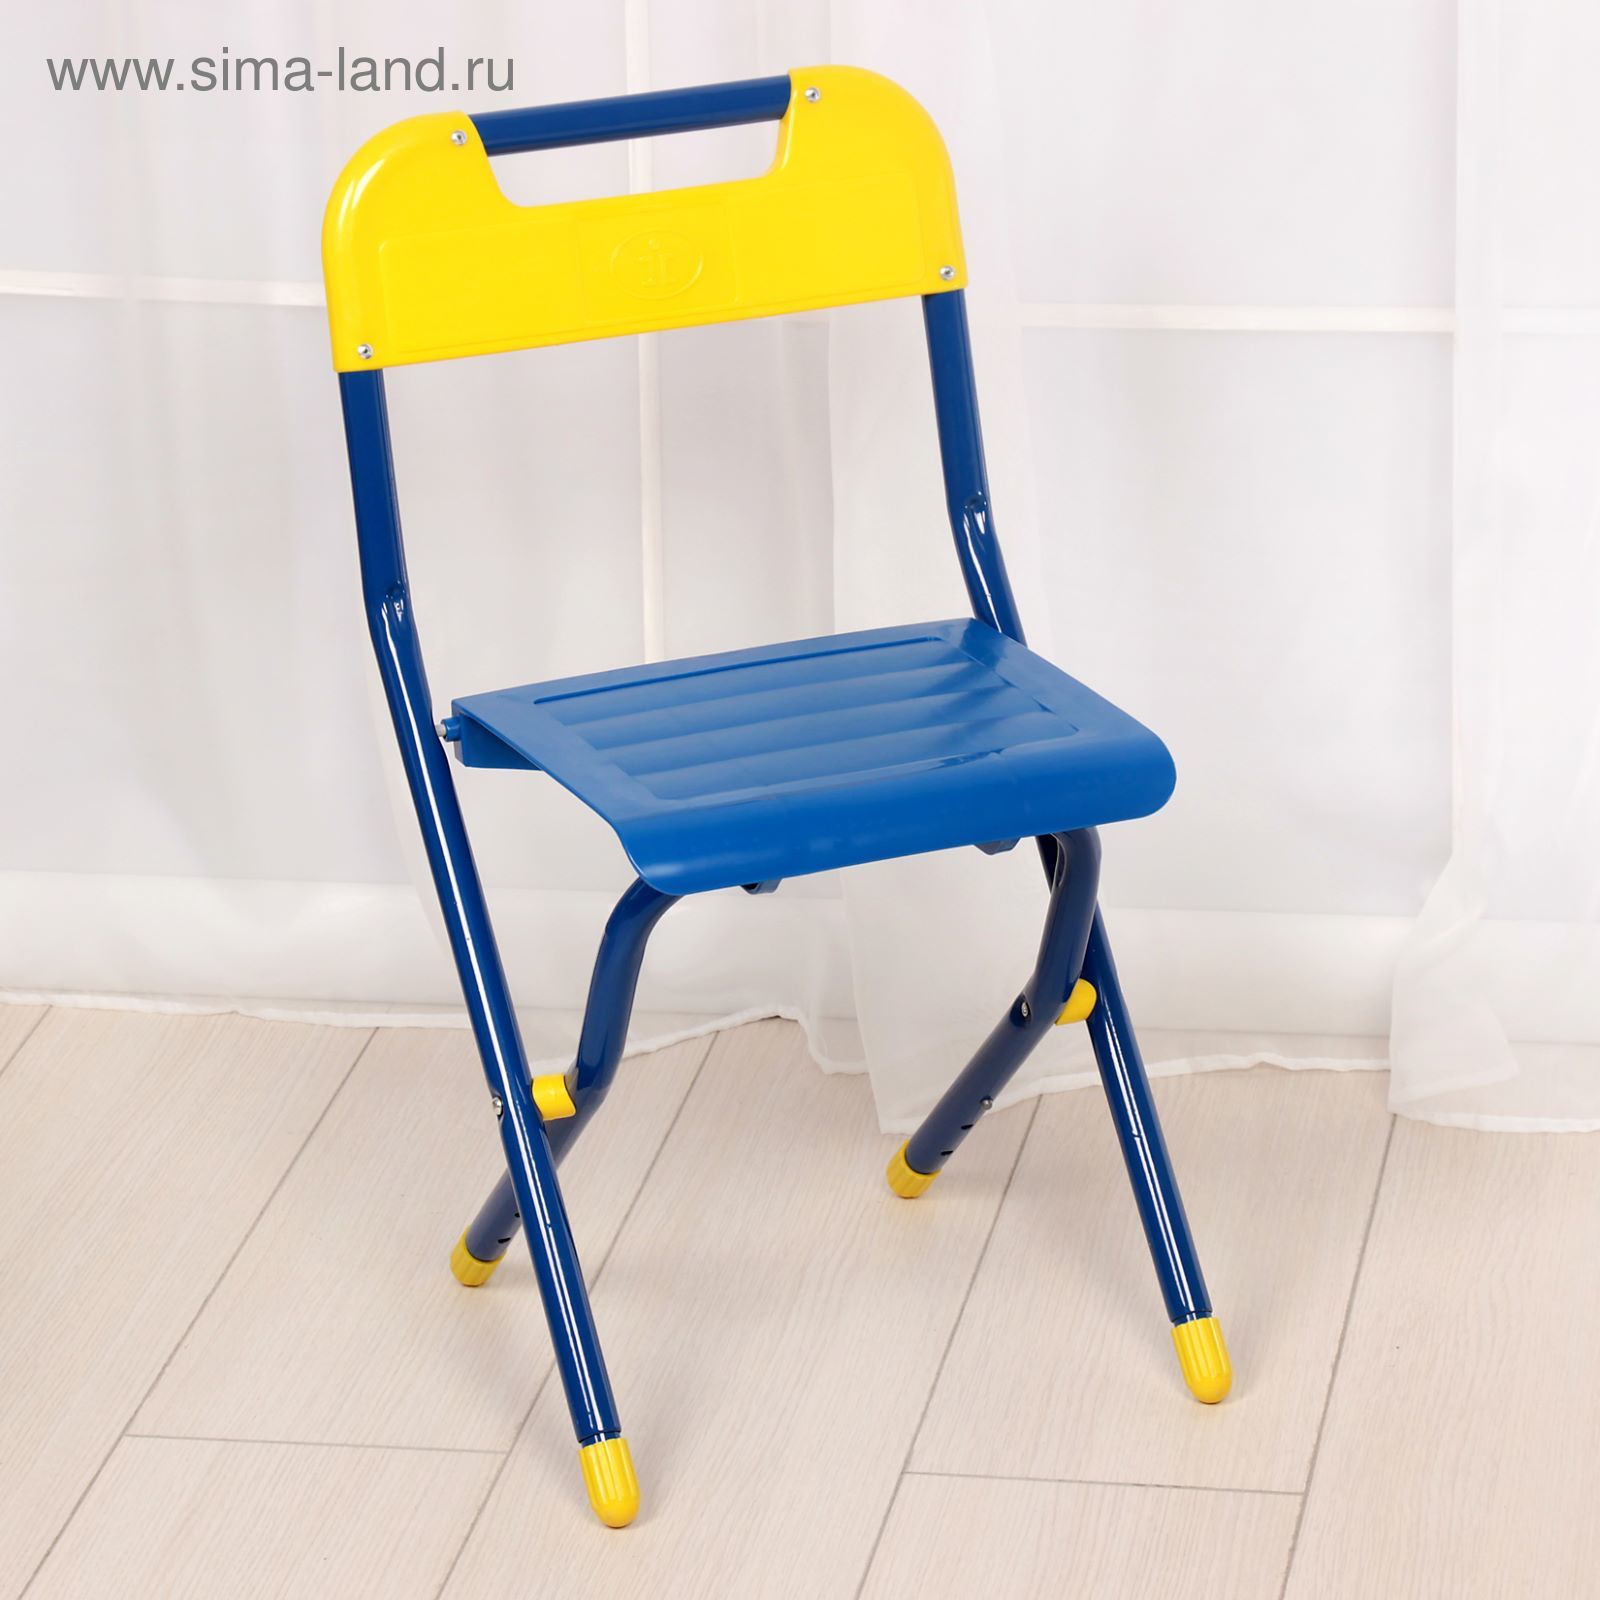 стул синий складной детский дэми